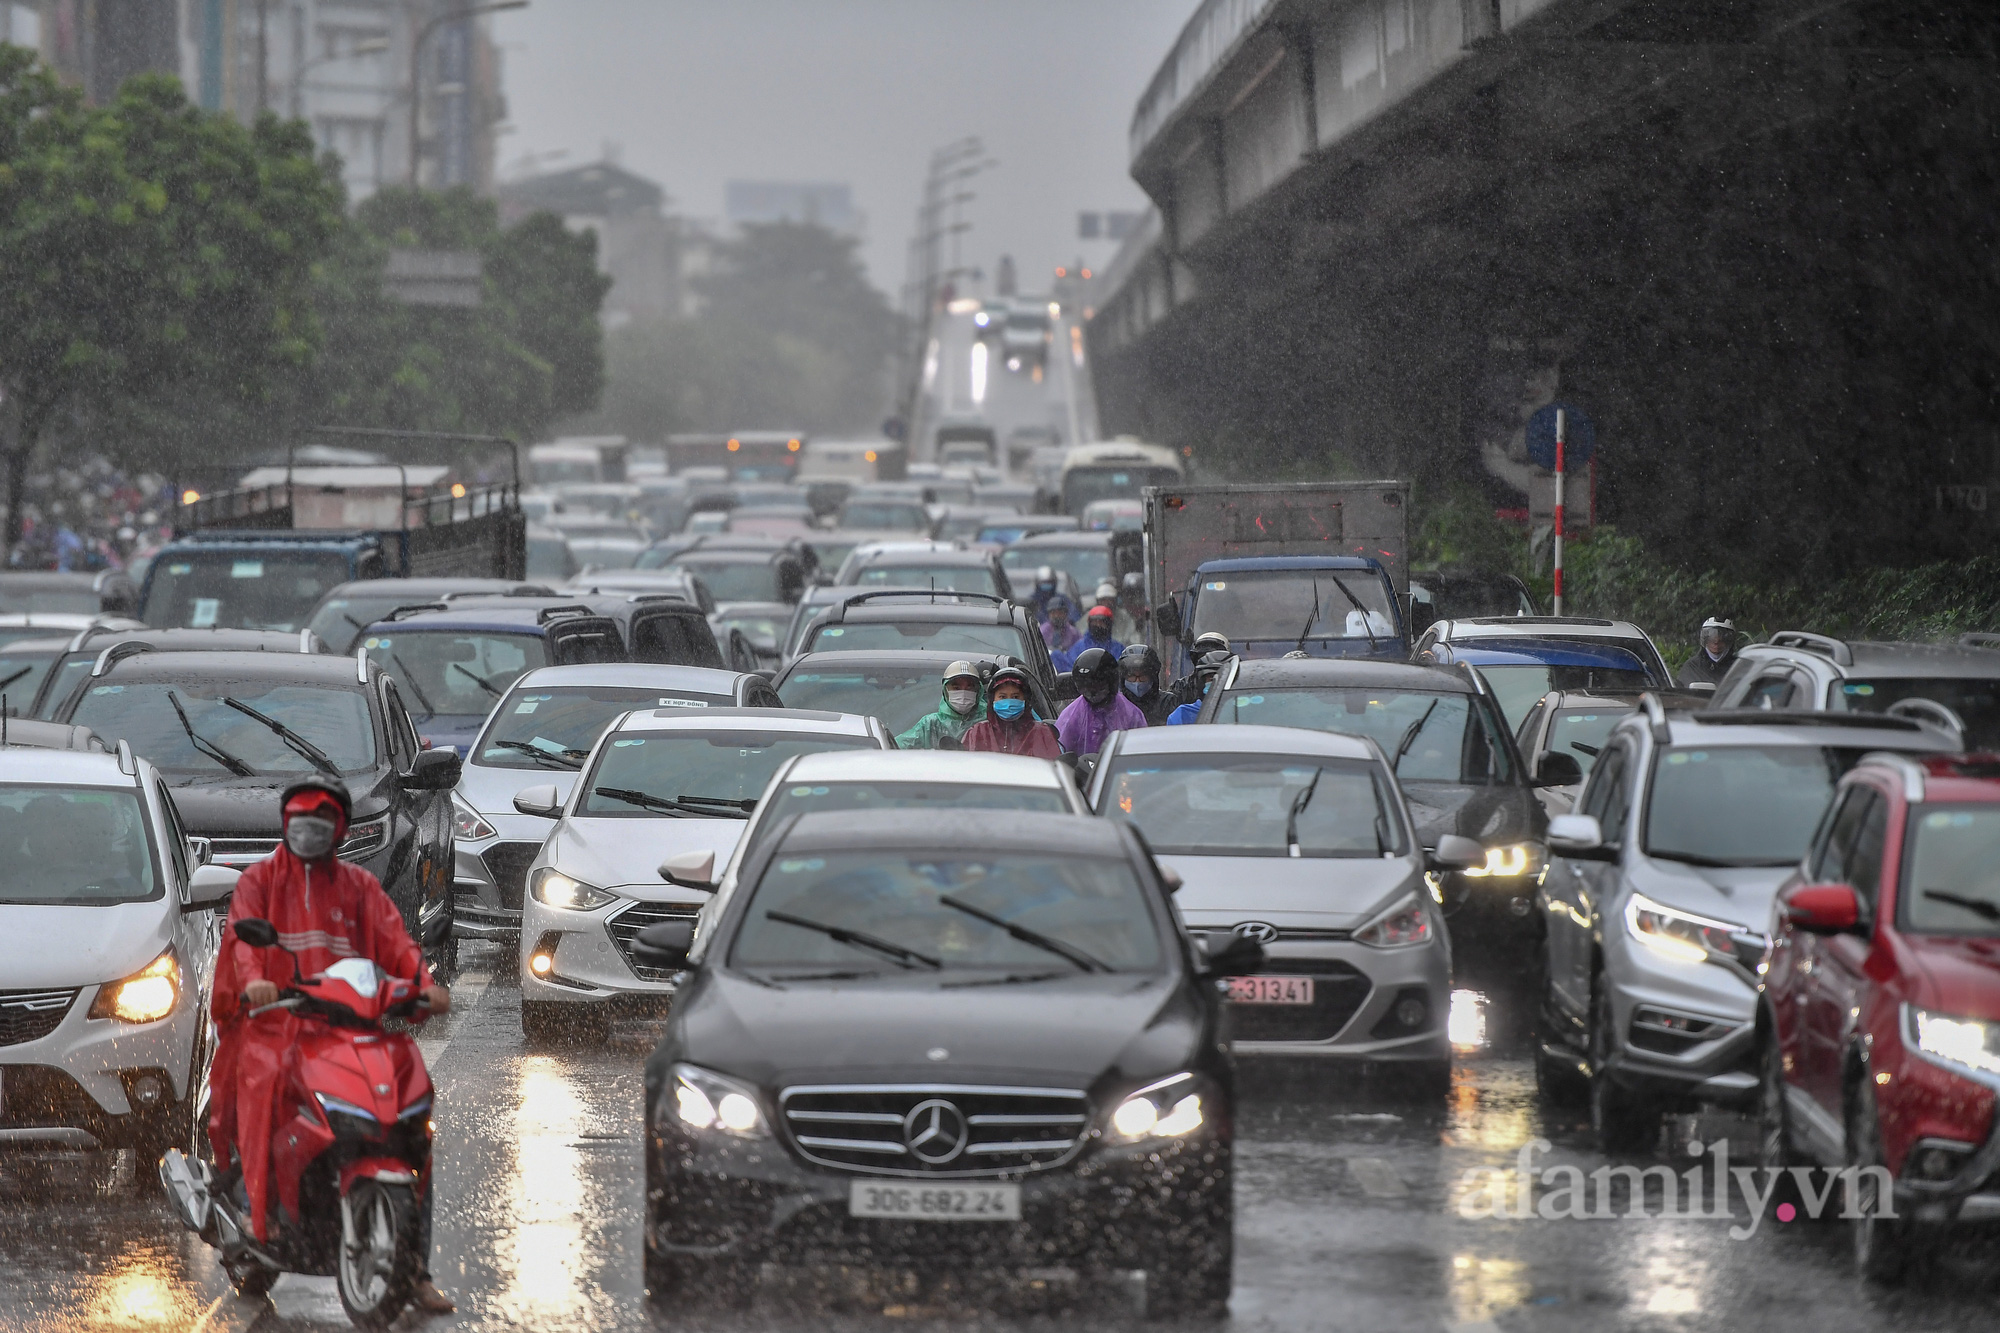 Đường phố ùn tắc, người Hà Nội vật lộn đi làm trong cơn mưa tầm tã - Ảnh 10.